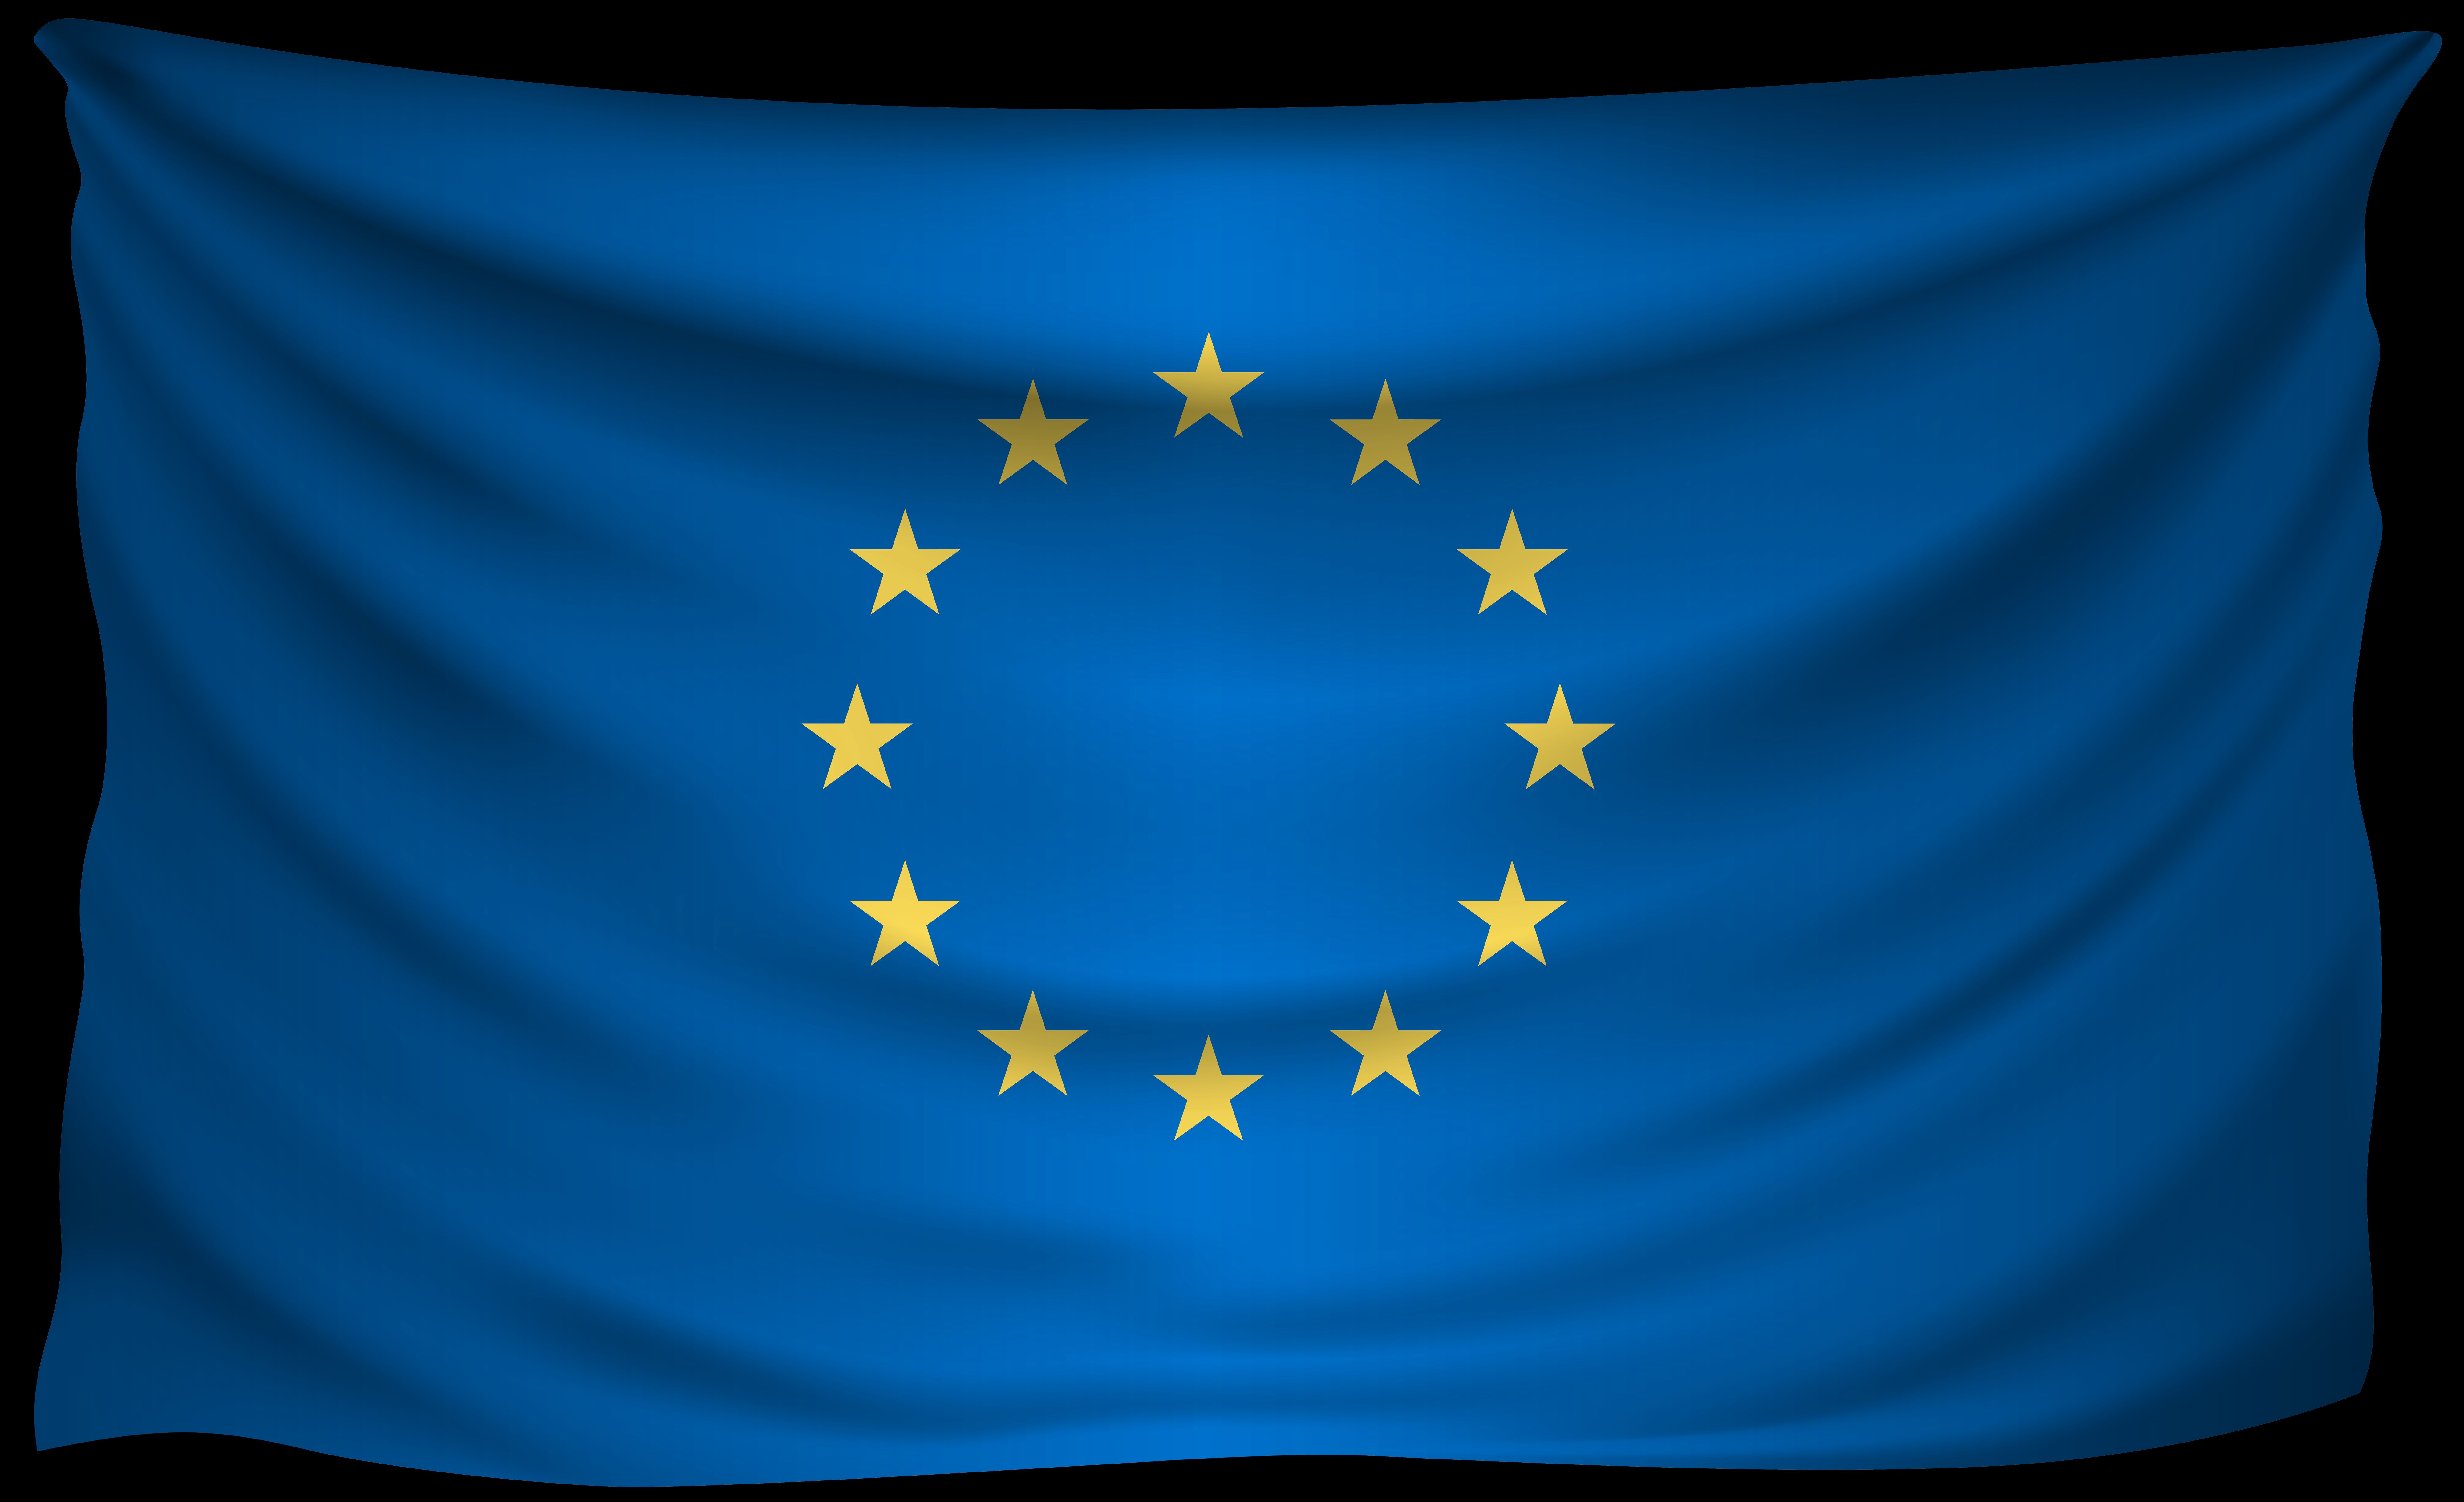 Скачать обои Европейский Союз на телефон бесплатно